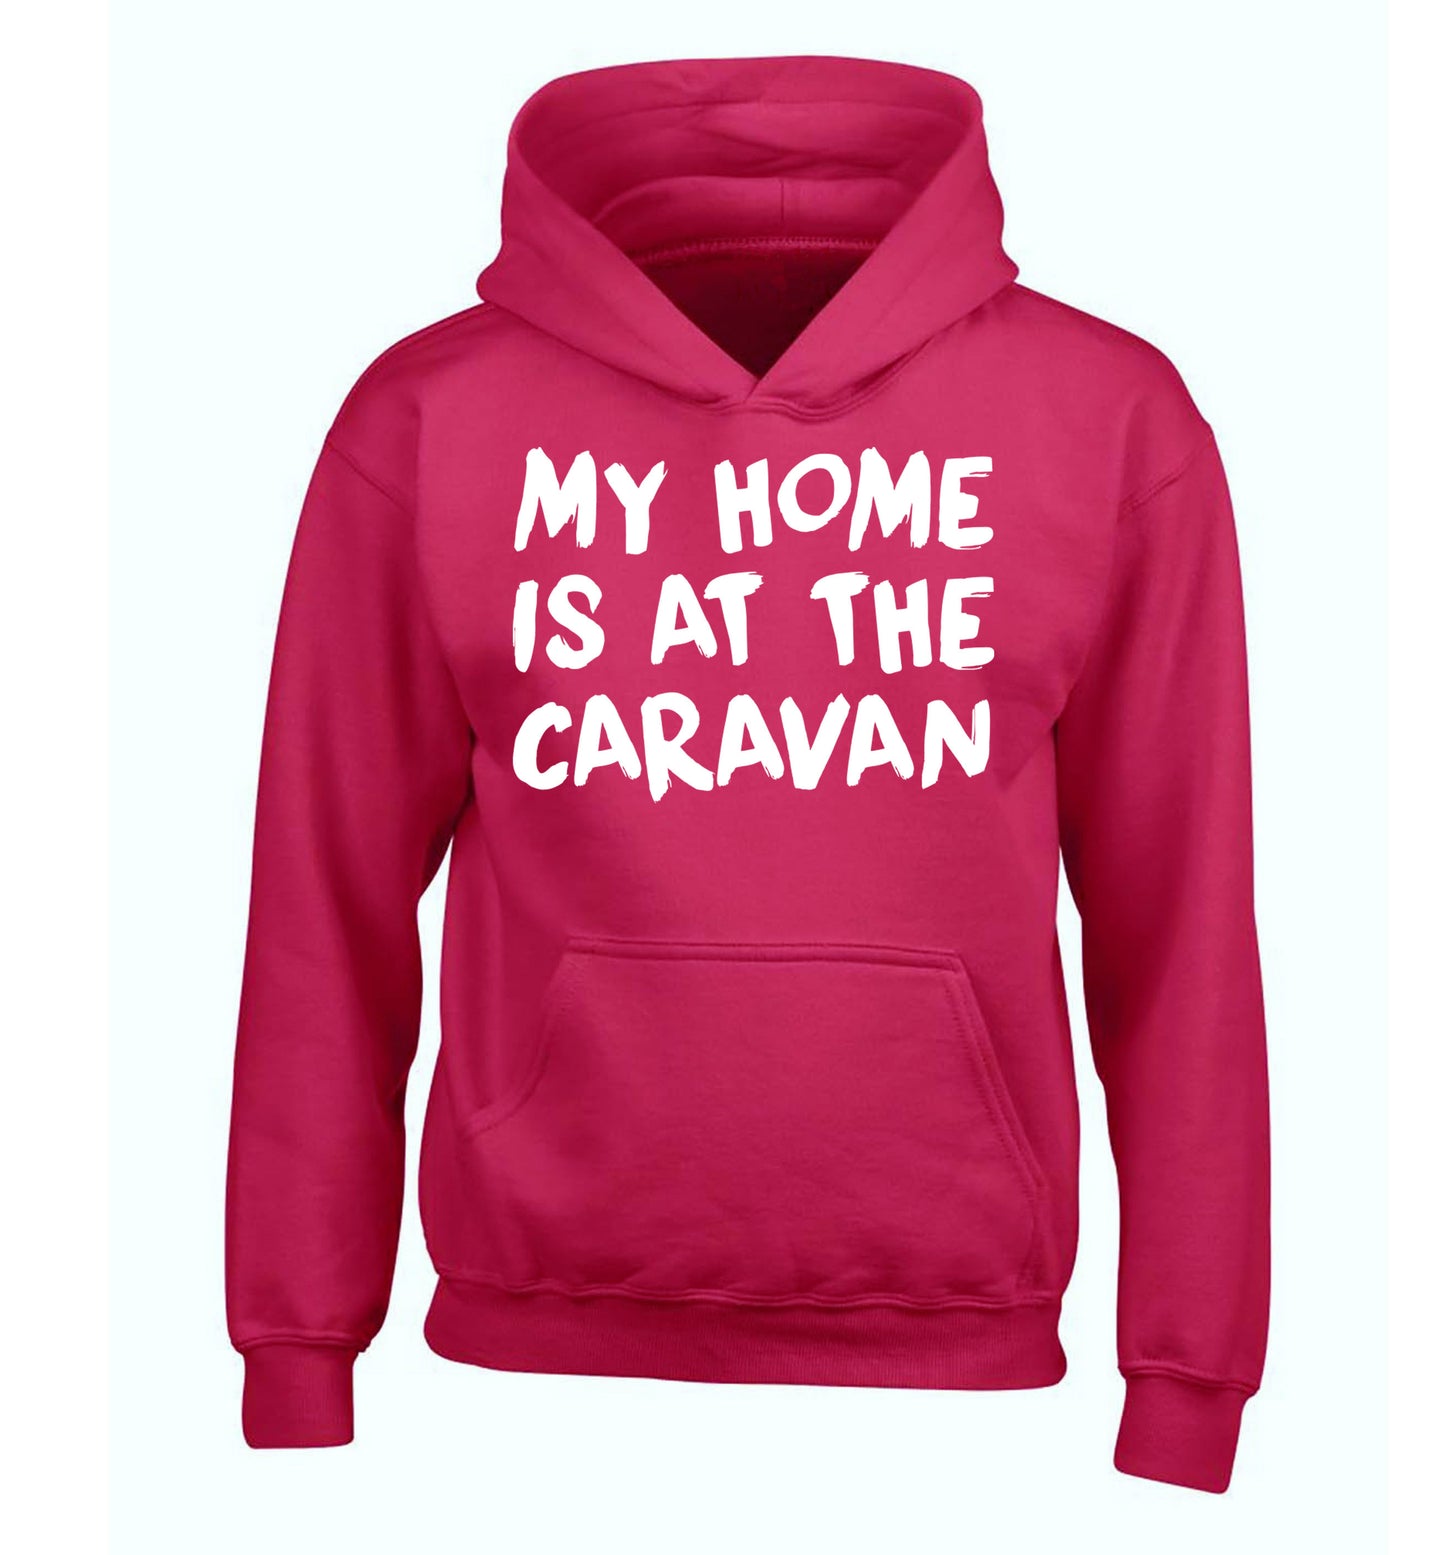 My home is at the caravan children's pink hoodie 12-14 Years